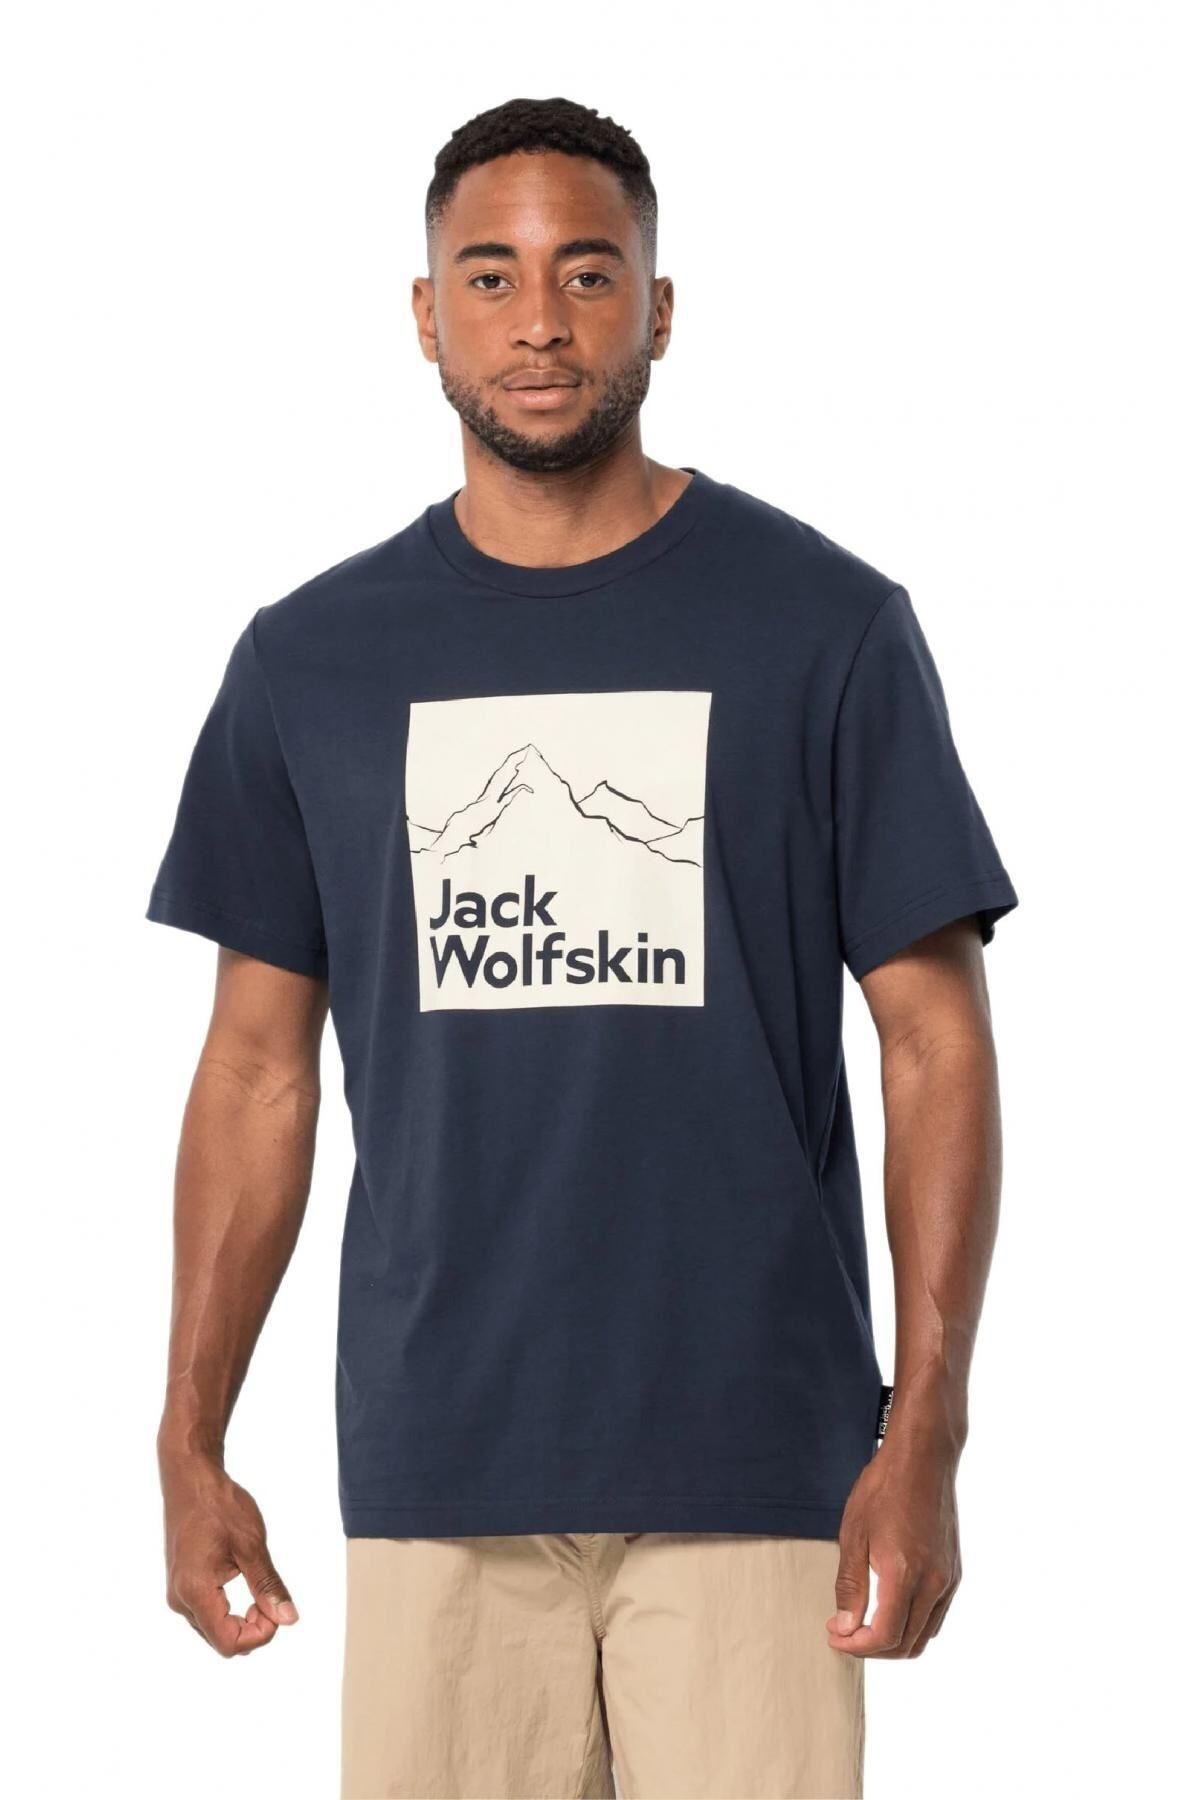 Jack Wolfskin 1809021 Brand T M Lacivert Erkek T-shirt